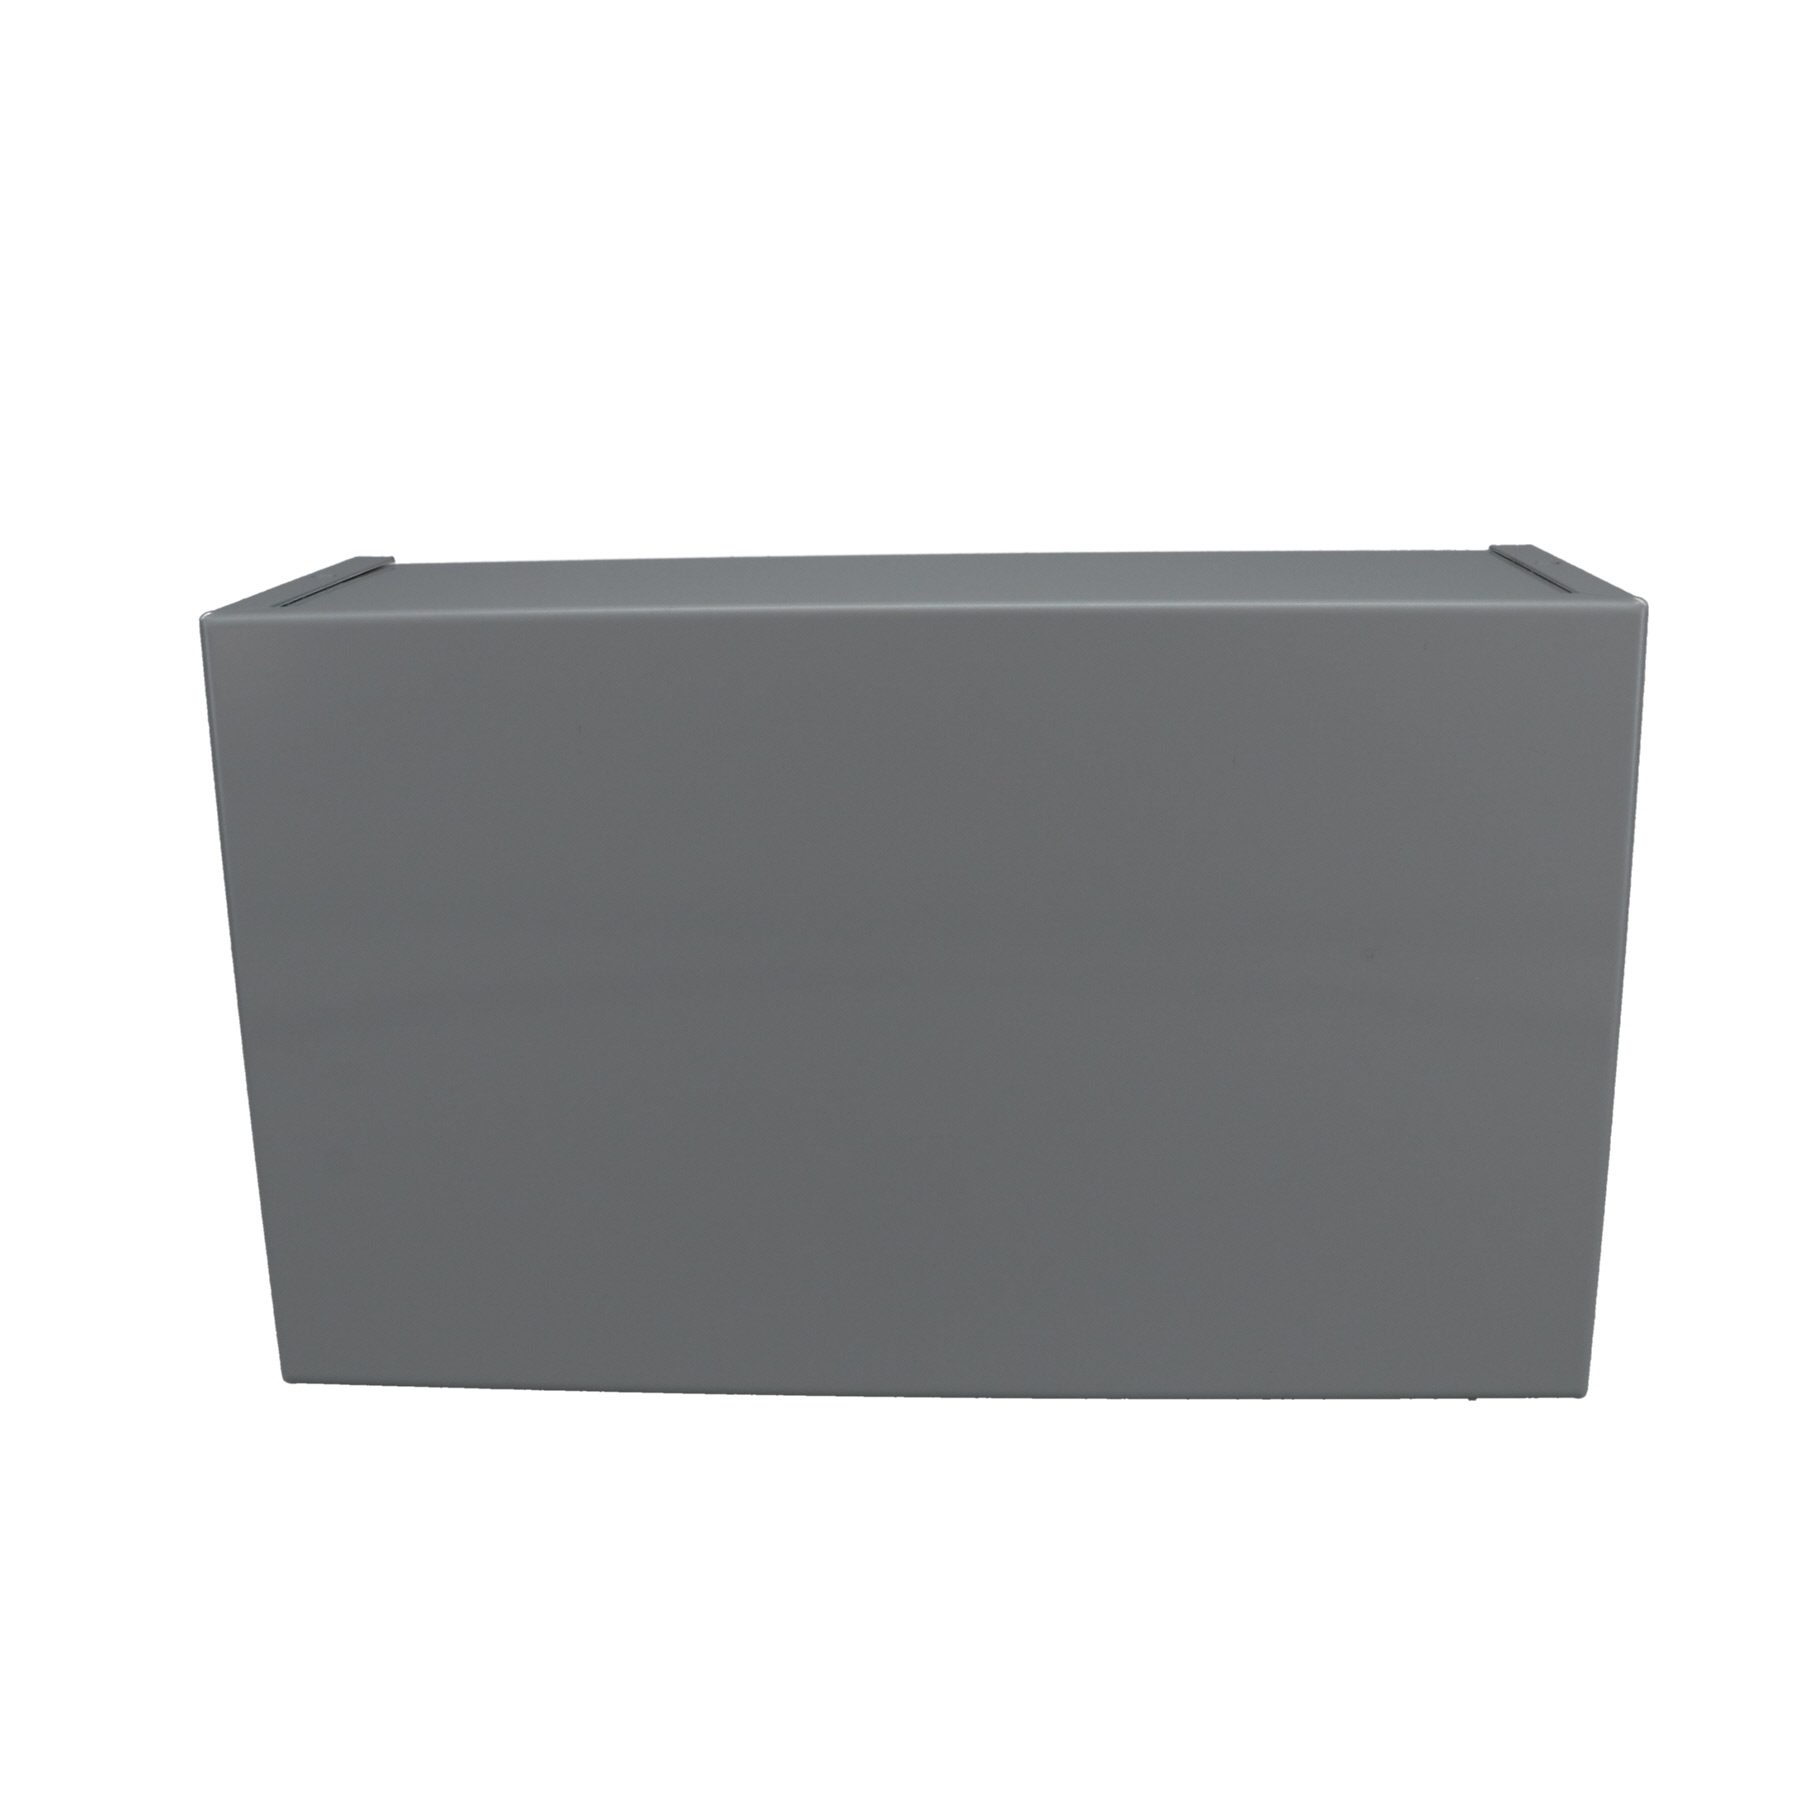 Minibox Small Metal Box Gray CU-2110-B